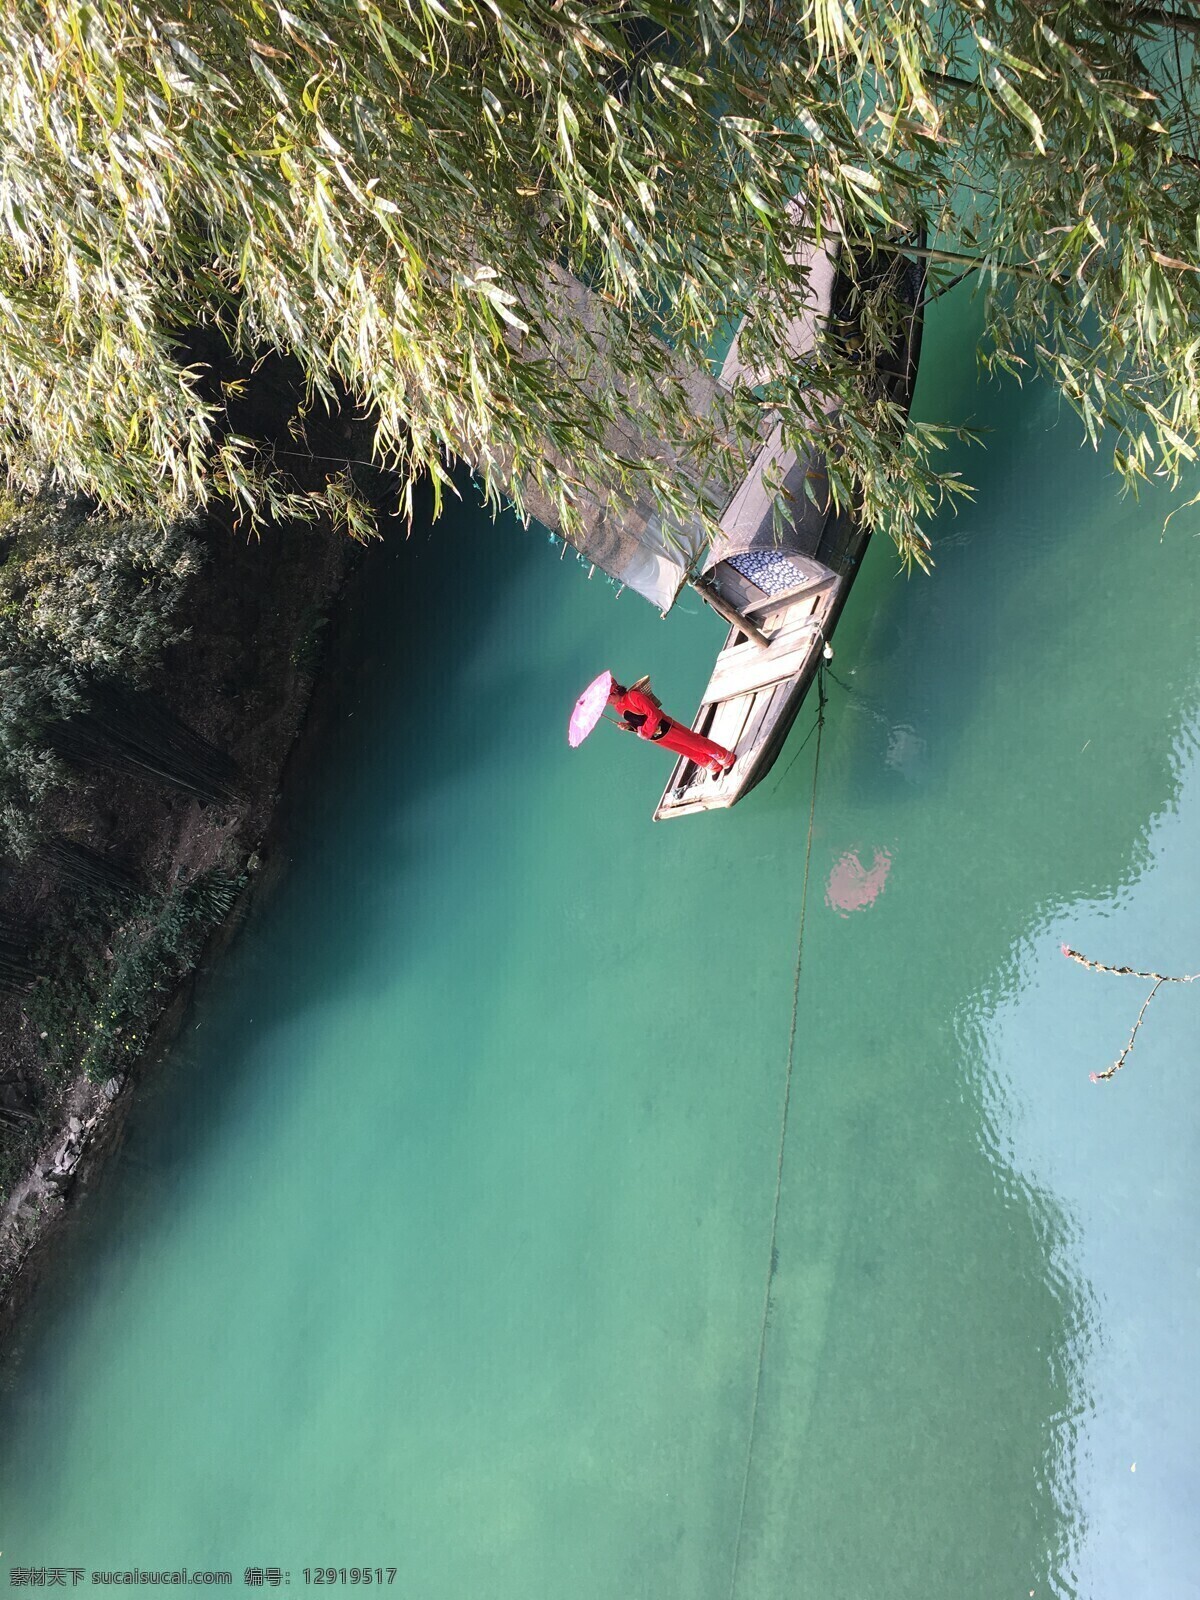 三峡风景 渔船 少女撑伞 柳叶垂下 绿水潺潺 旅游摄影 国内旅游